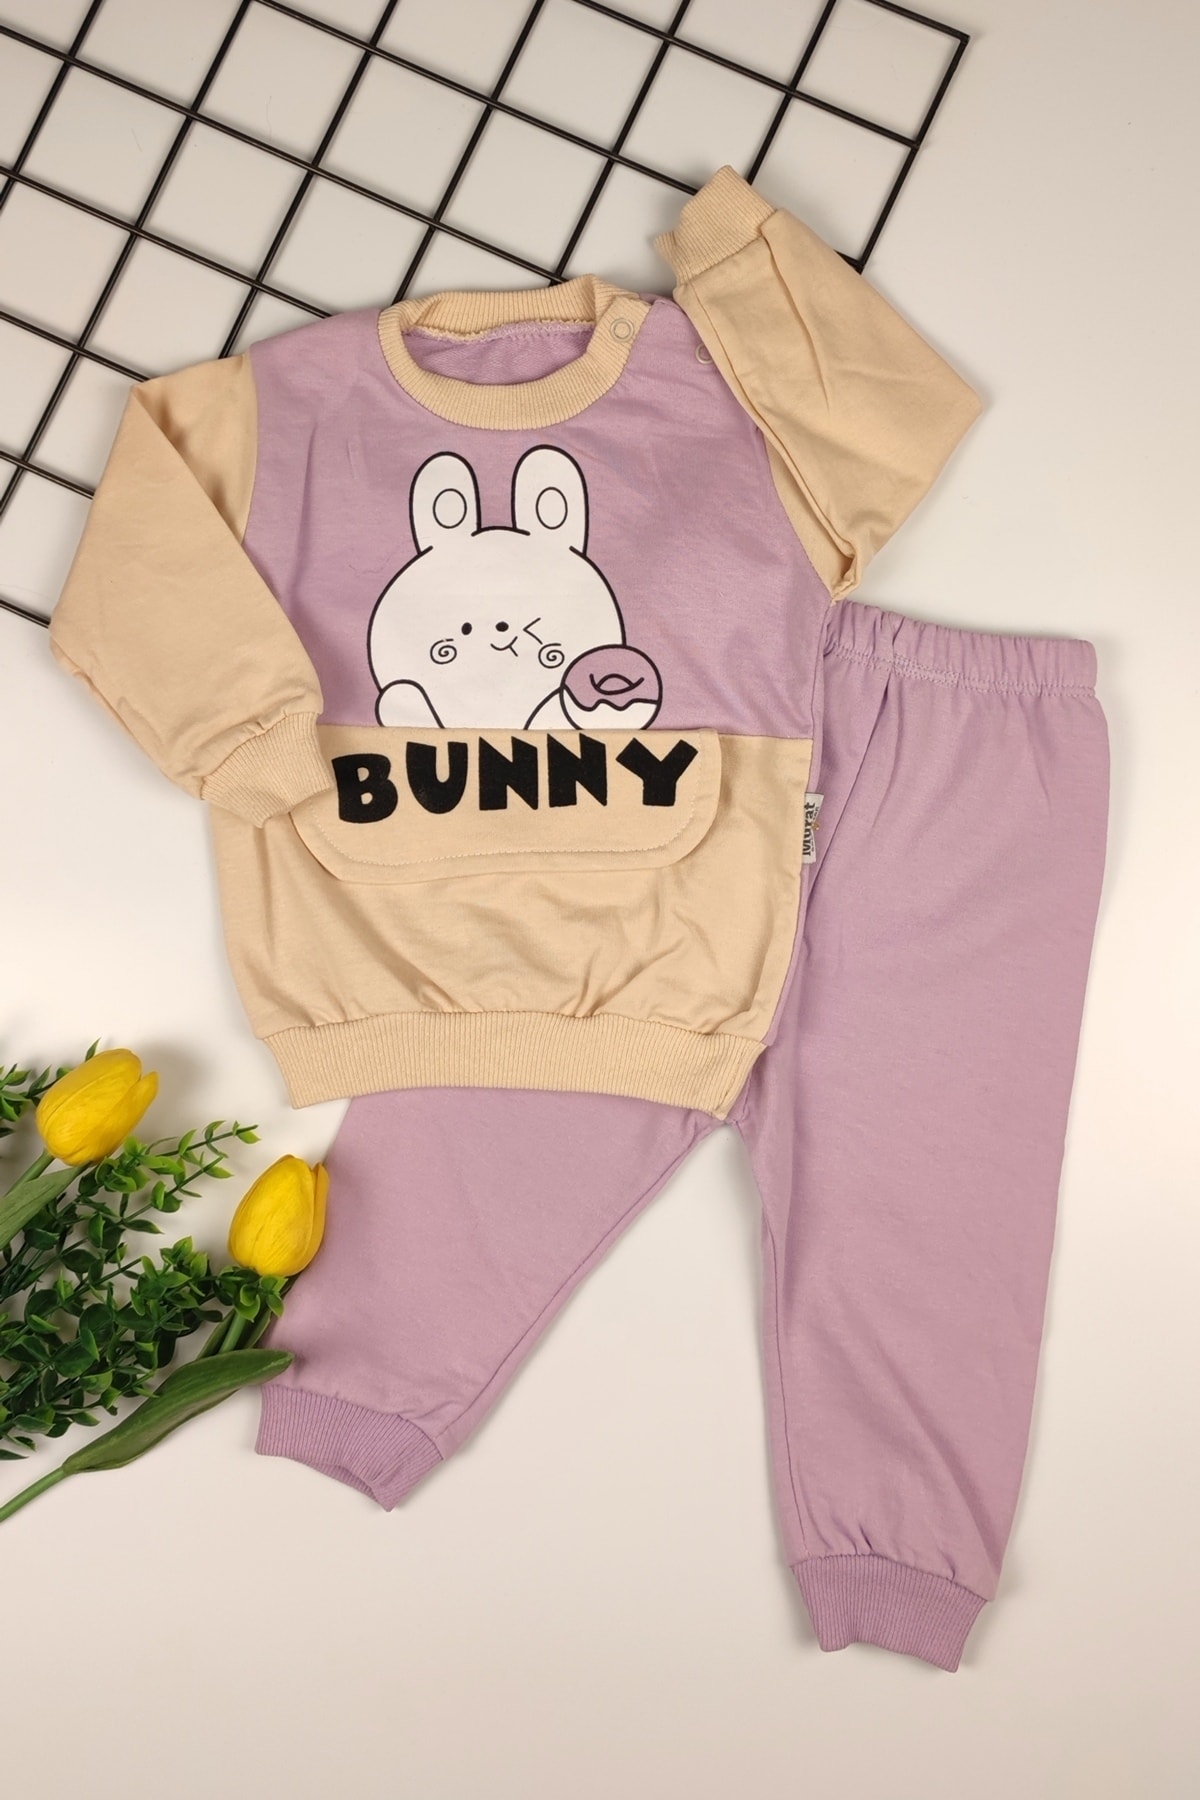 ADA BEBEK ÇOCUK Unisex Bunny Sevimli Tavşan Desenli Alt Üst Bebek Takımı